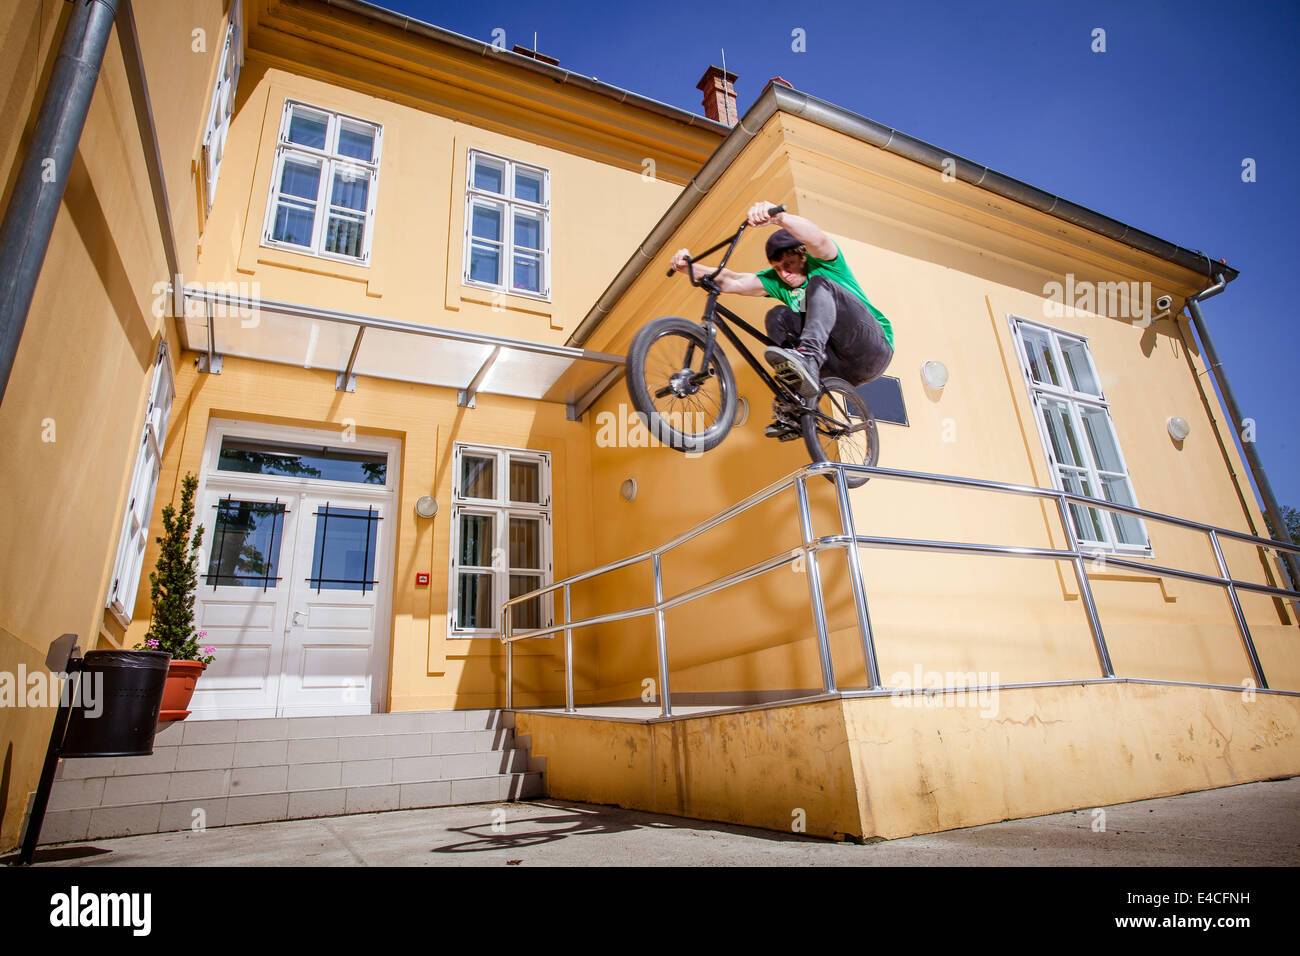 BMX biker jumping over a railing Stock Photo